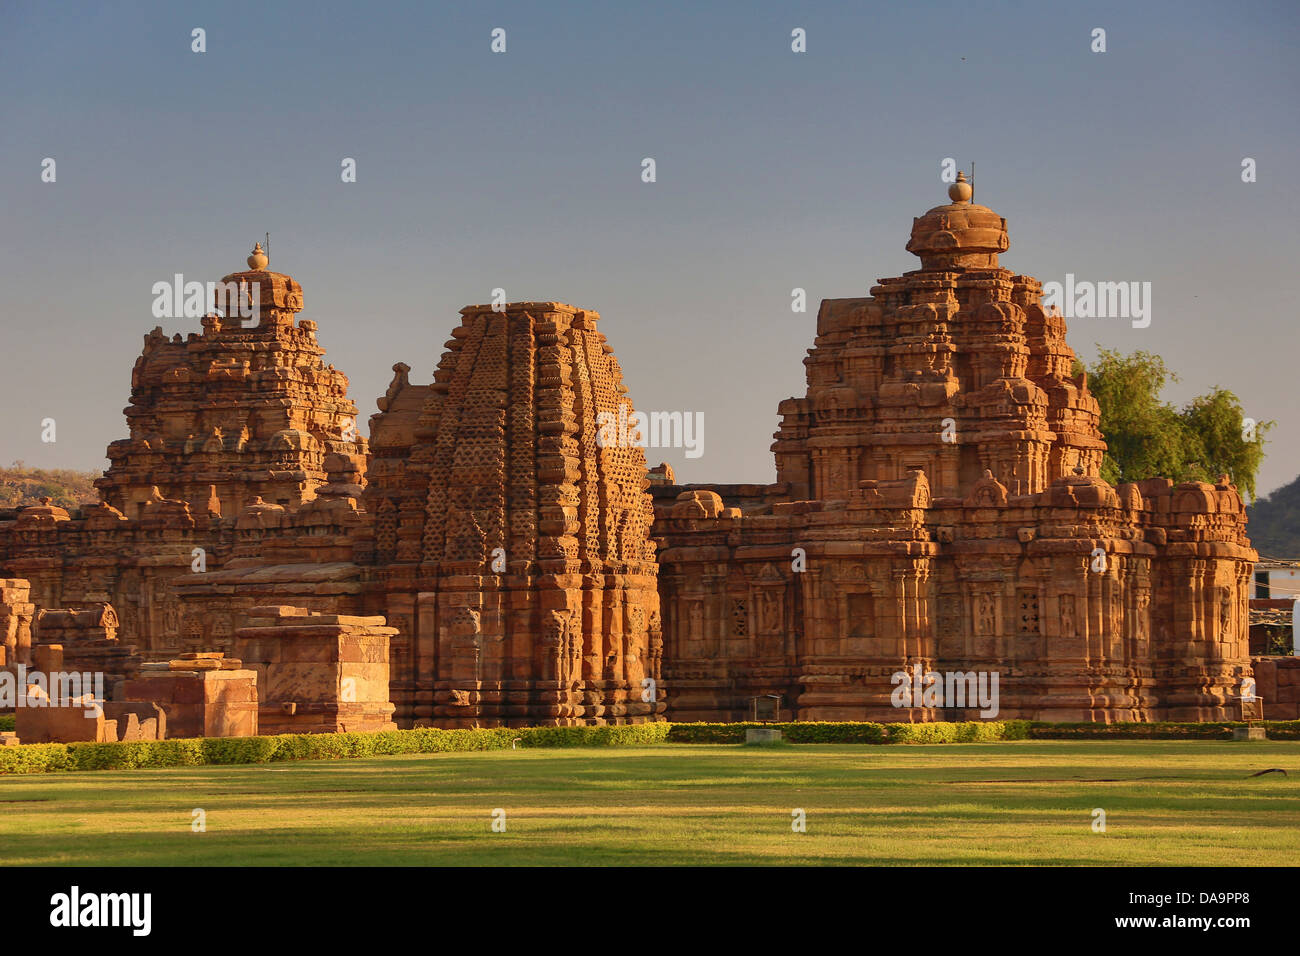 La India, Sur de India, Asia, Karnataka, Badami, Pattadakal, Patrimonio de la humanidad, Virupaksha, Templo, Badami, la arquitectura, el arte, la ciudad, co Foto de stock